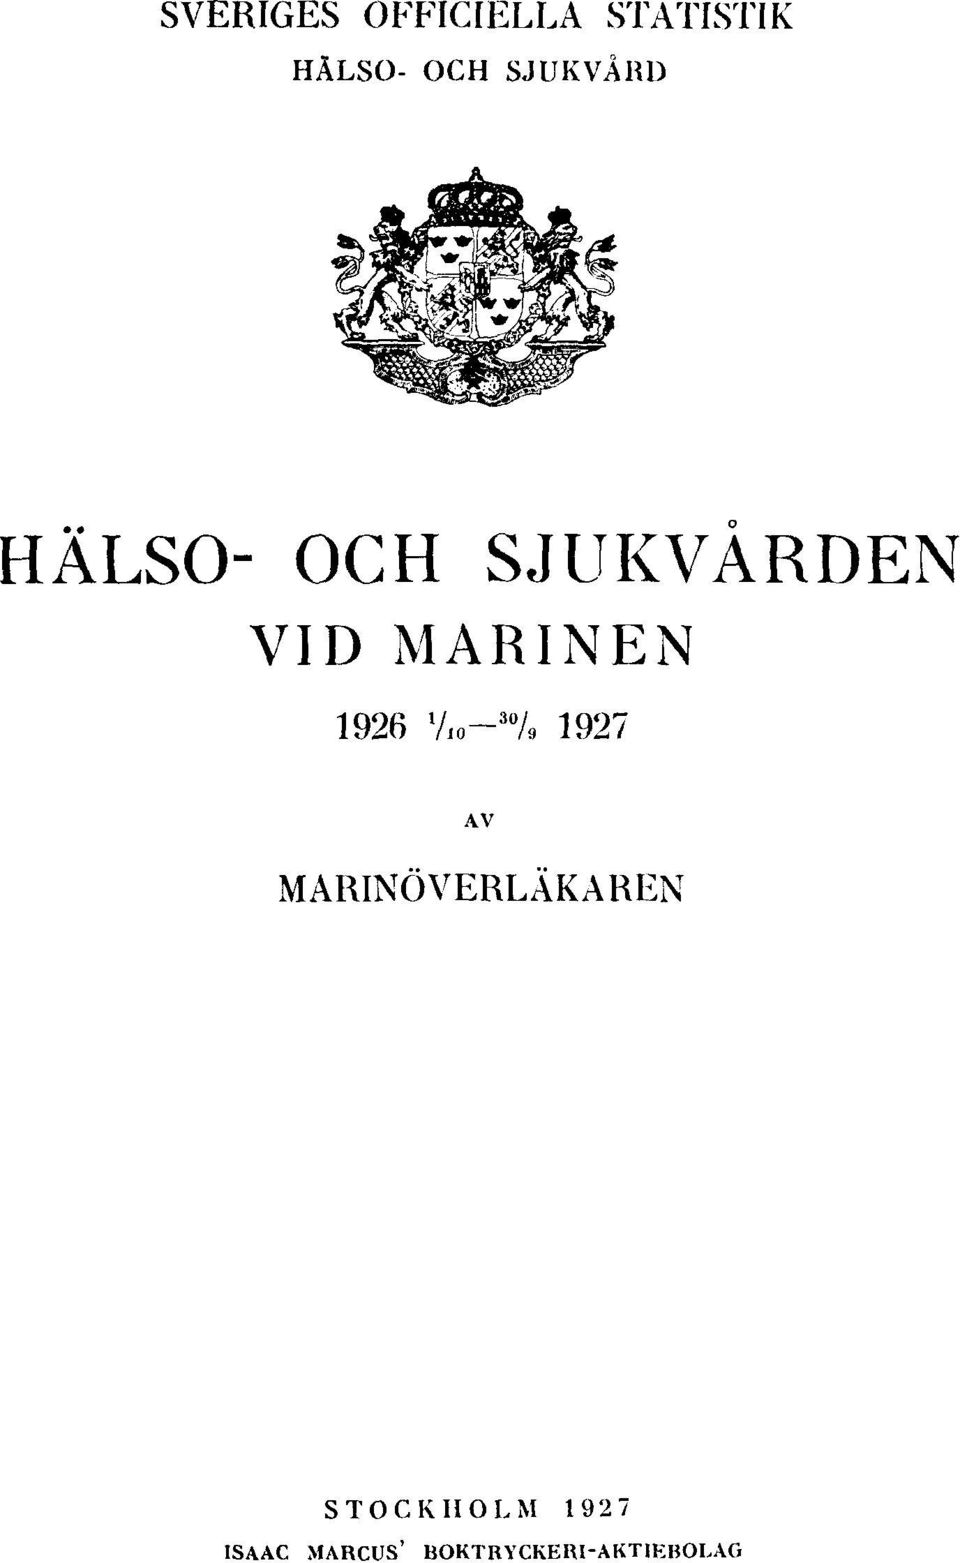 1926 1 / 10-30 / 9 1927 AV MARINÖVERLÄKAREN